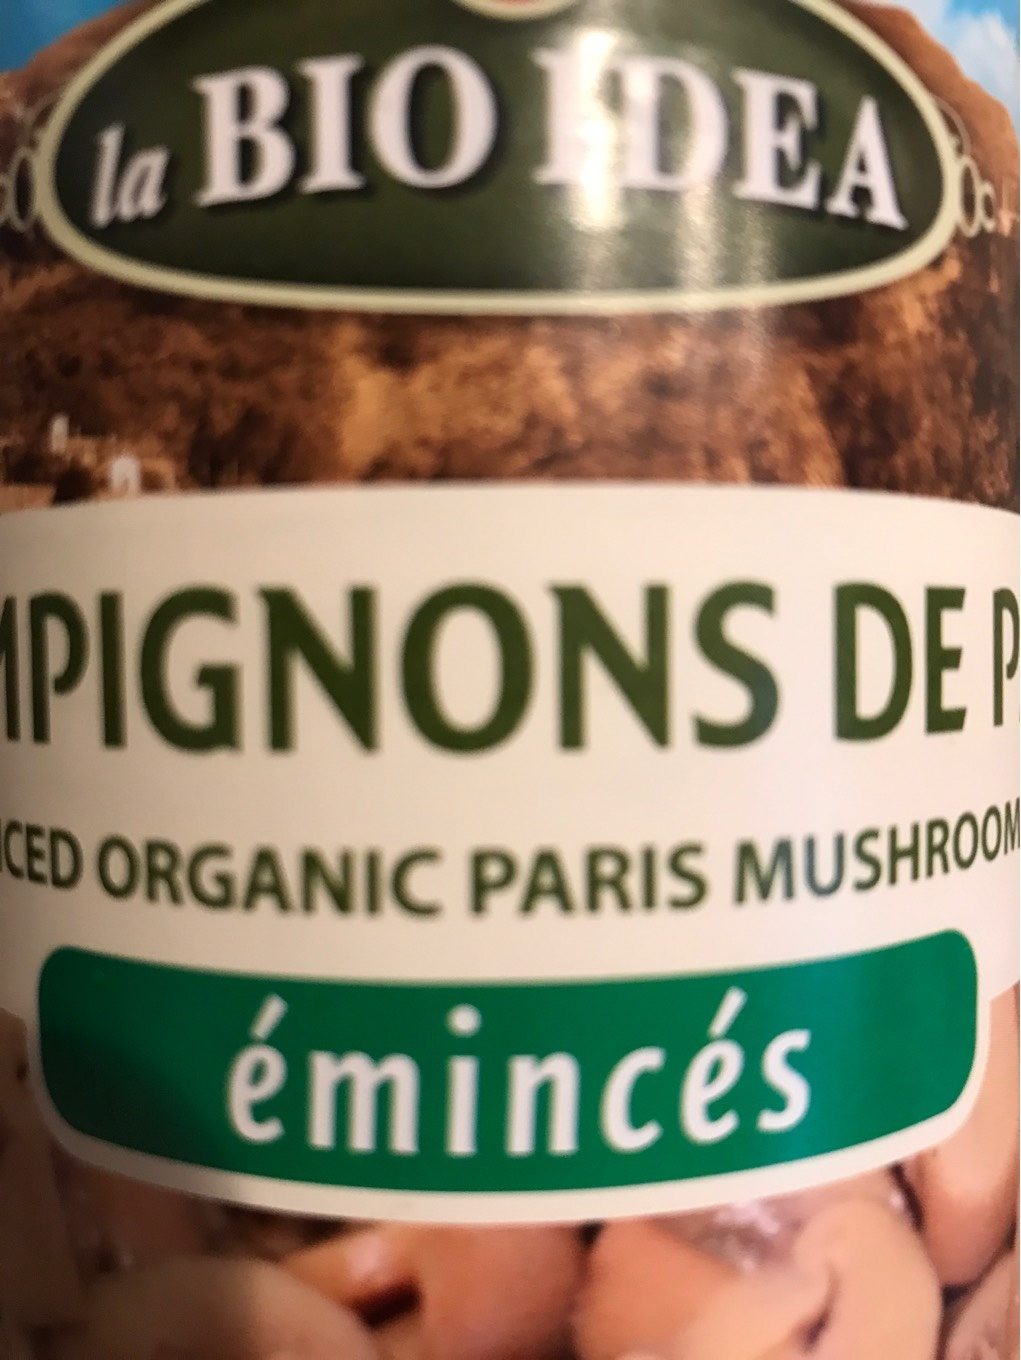 Champignons de Paris émincés - Tableau nutritionnel